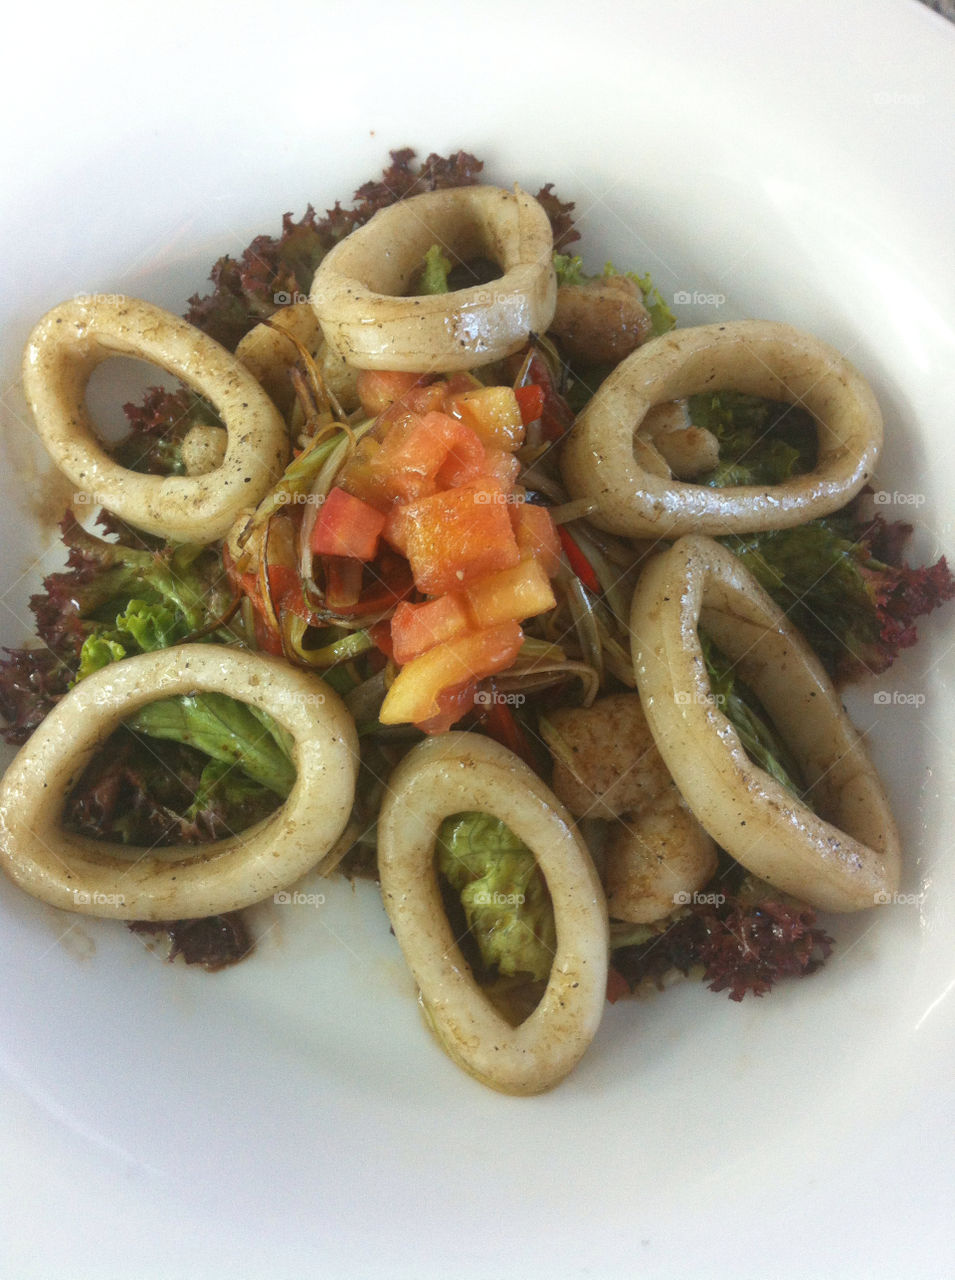 escuela de gastronomia mariano moreno mar delicioso ensalada by danijurado